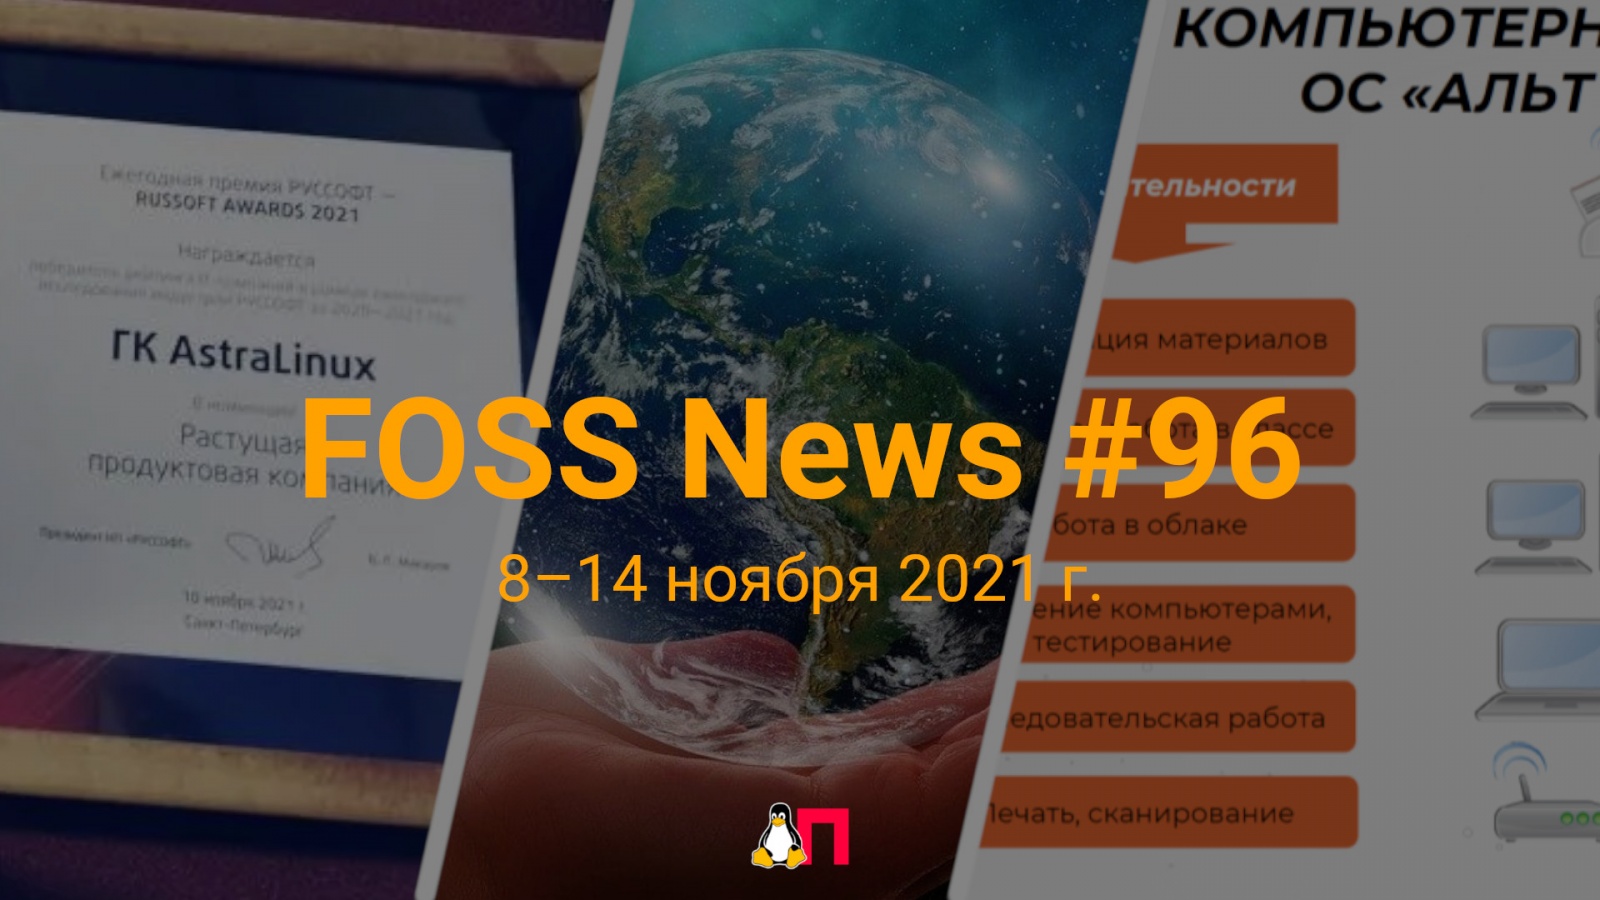 FOSS News №96 — дайджест материалов о свободном и открытом ПО за 8—14 ноября 2021 года - 1